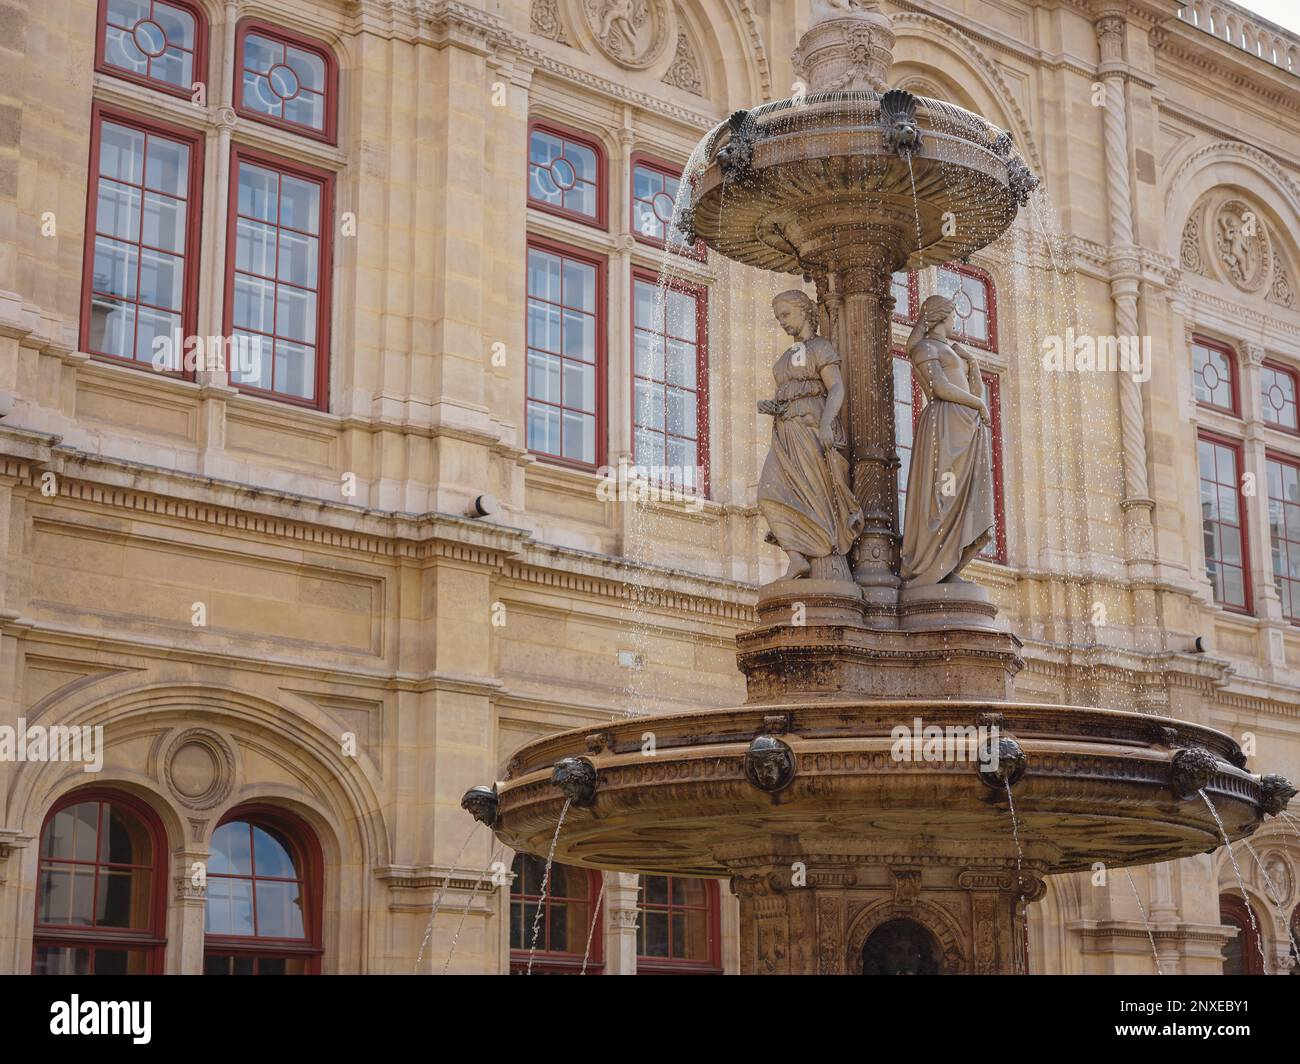 Schöner Opernbrunnen bedeutet unter der krönenden Allegorie der Musik. Die Wiener Staatsoper ist das größte Opernhaus in Österreich, eines der wichtigsten Opernzentren der Welt. Stockfoto